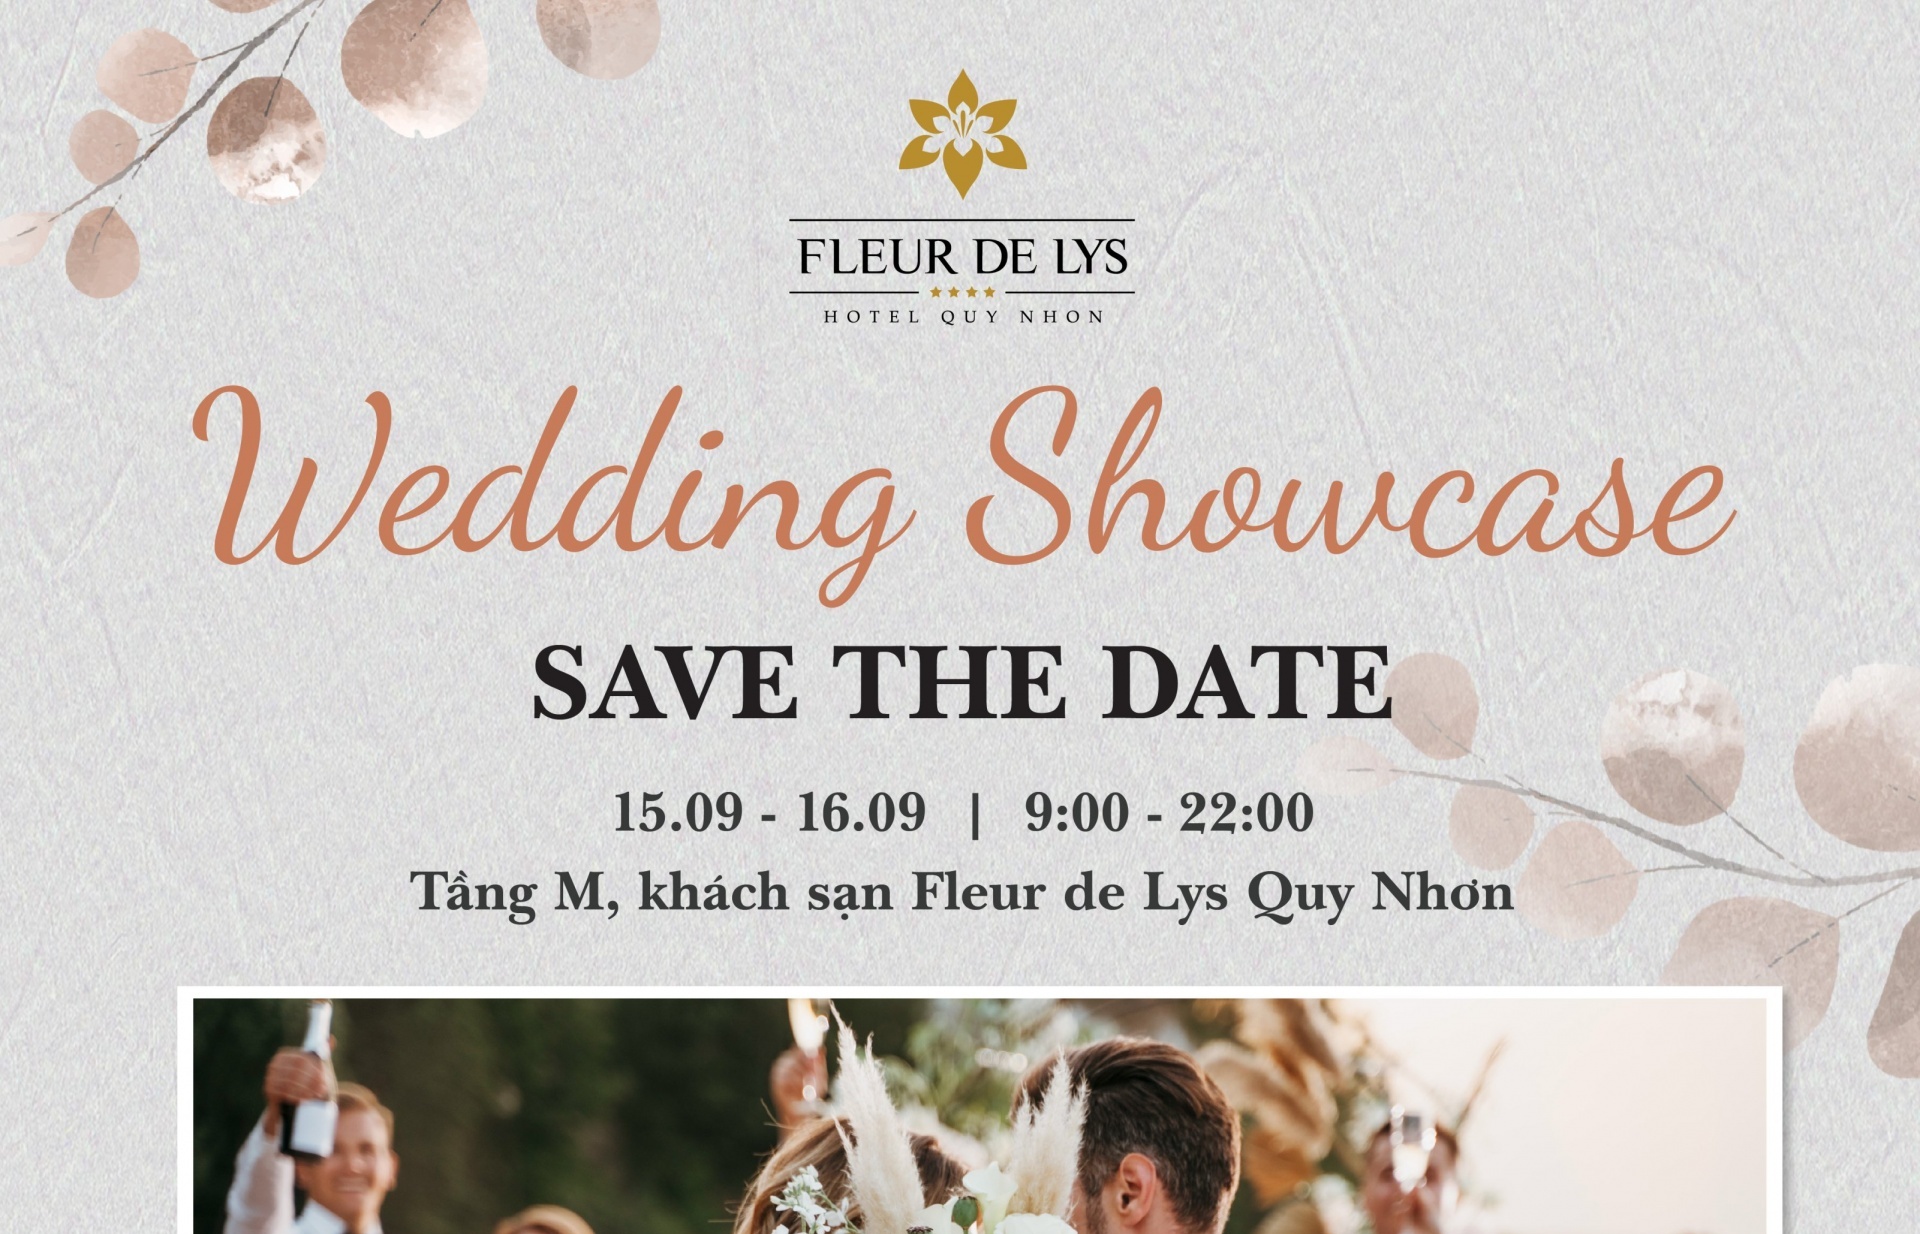 Fleur de Lys Quy Nhon premieres wedding fair